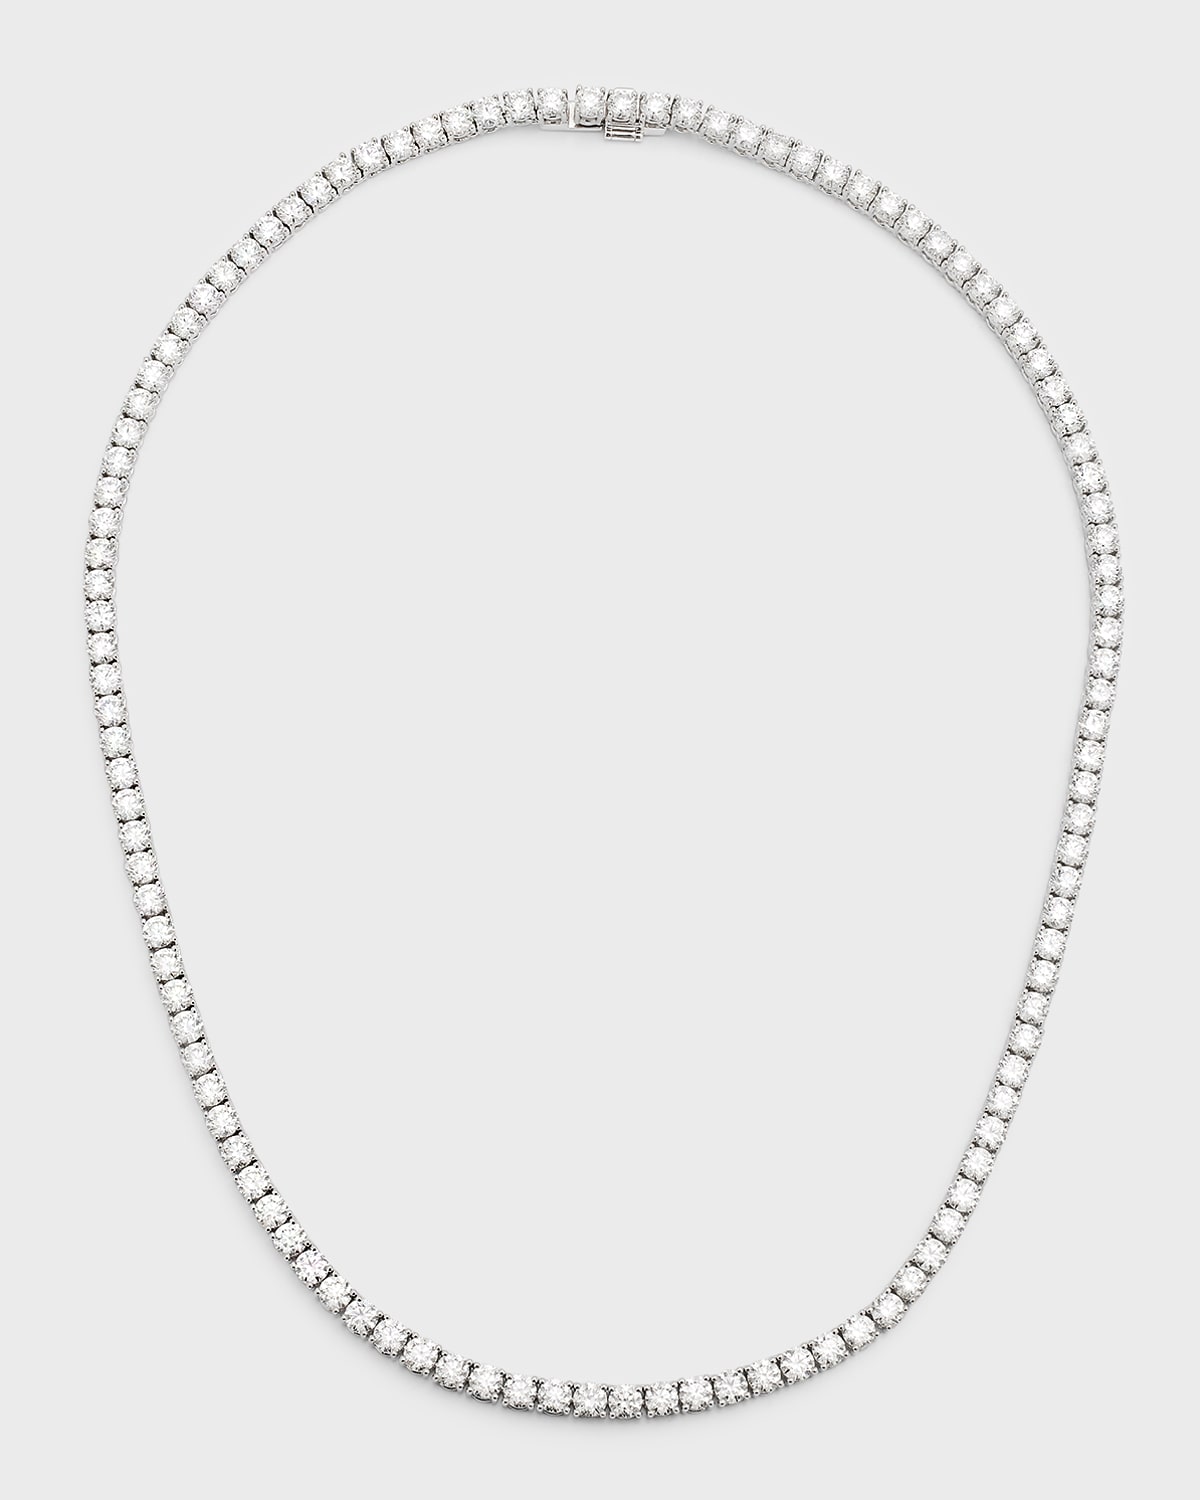 Neiman Marcus Diamonds 18k White Gold Round Diamond Tennis Necklace, 22.4tcw